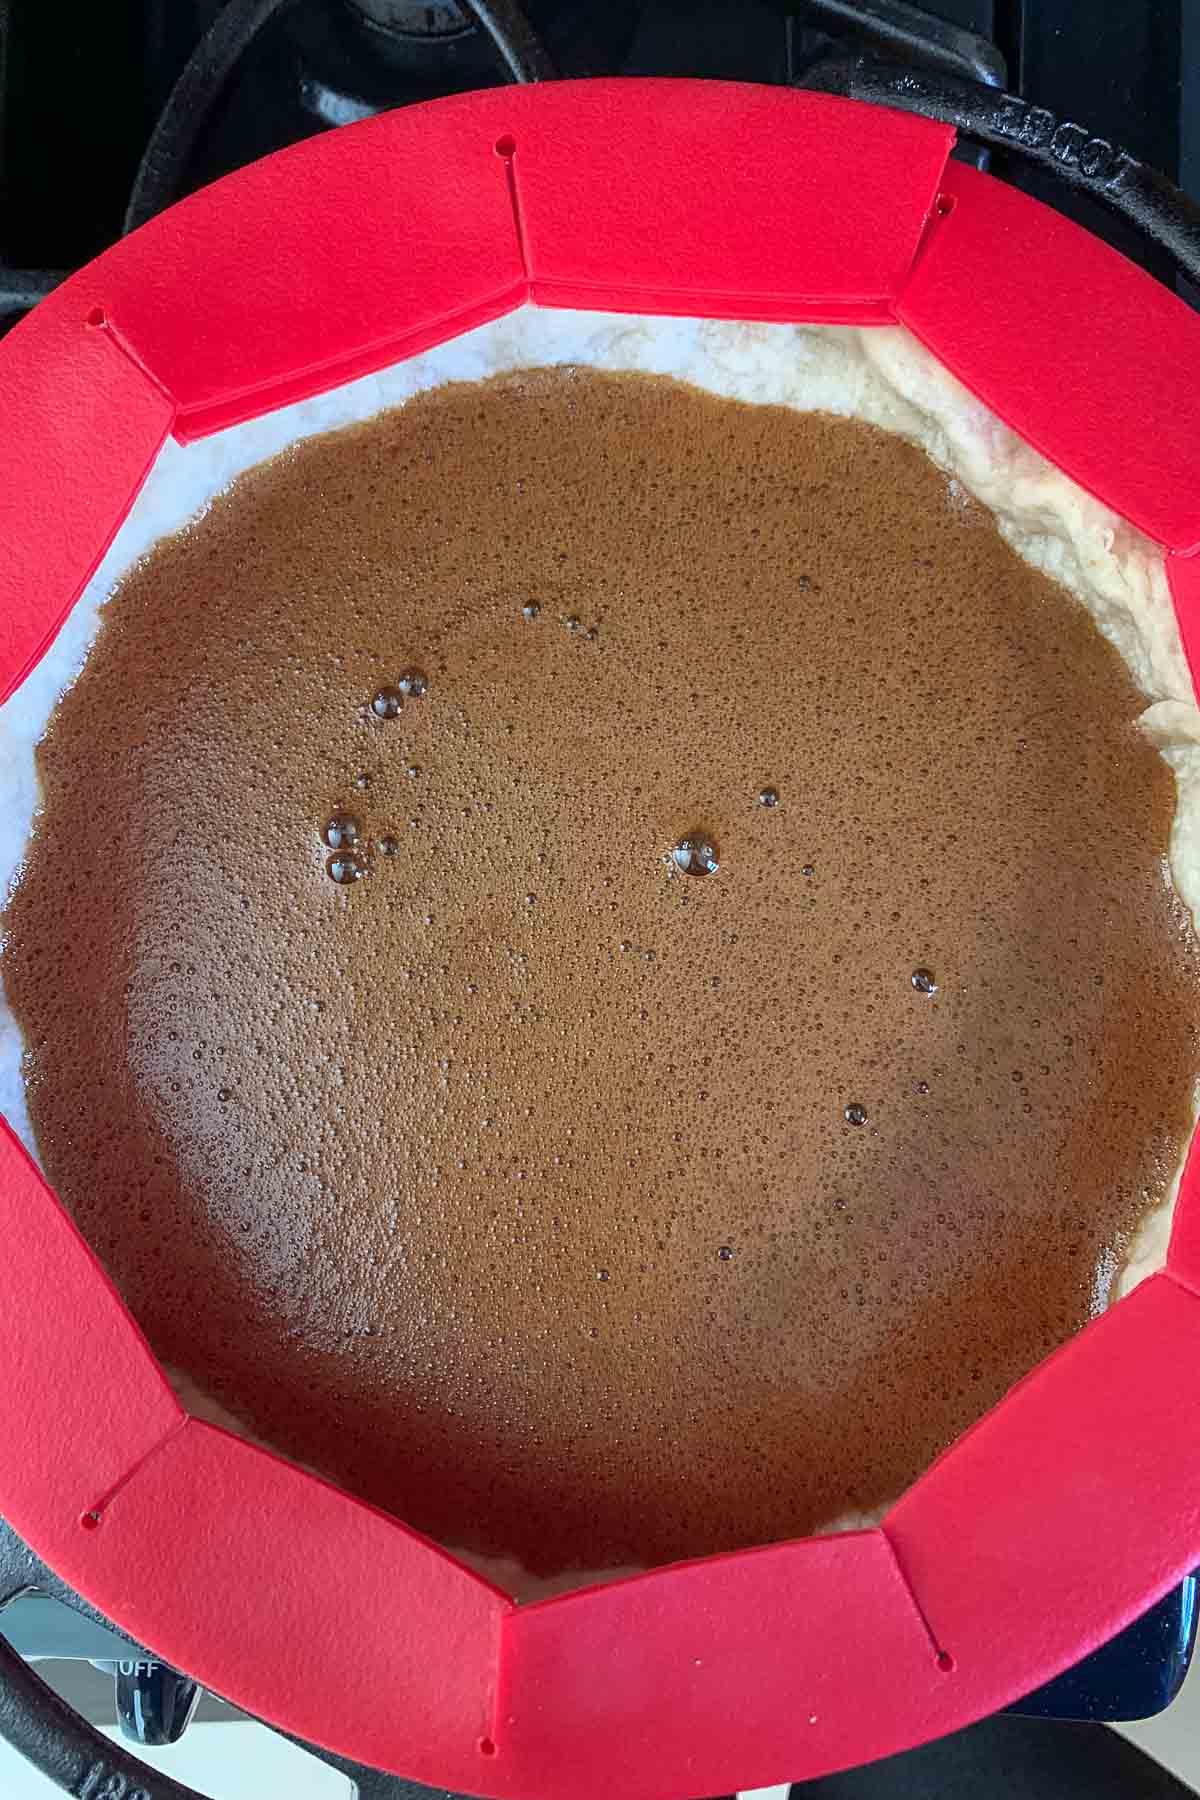 Wet filling for shoofly pie in a pie crust.